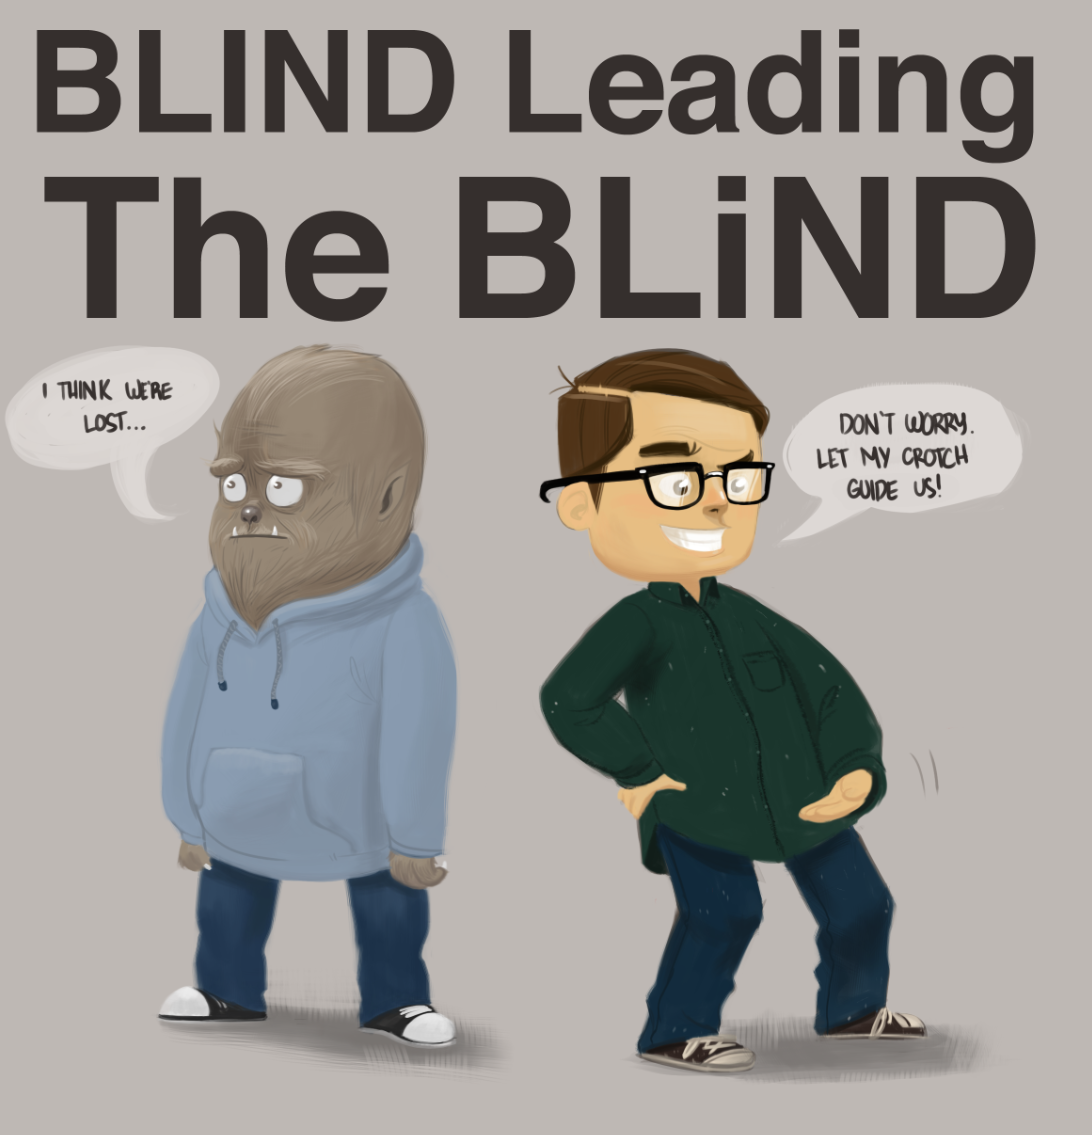 I see said the blind man meme